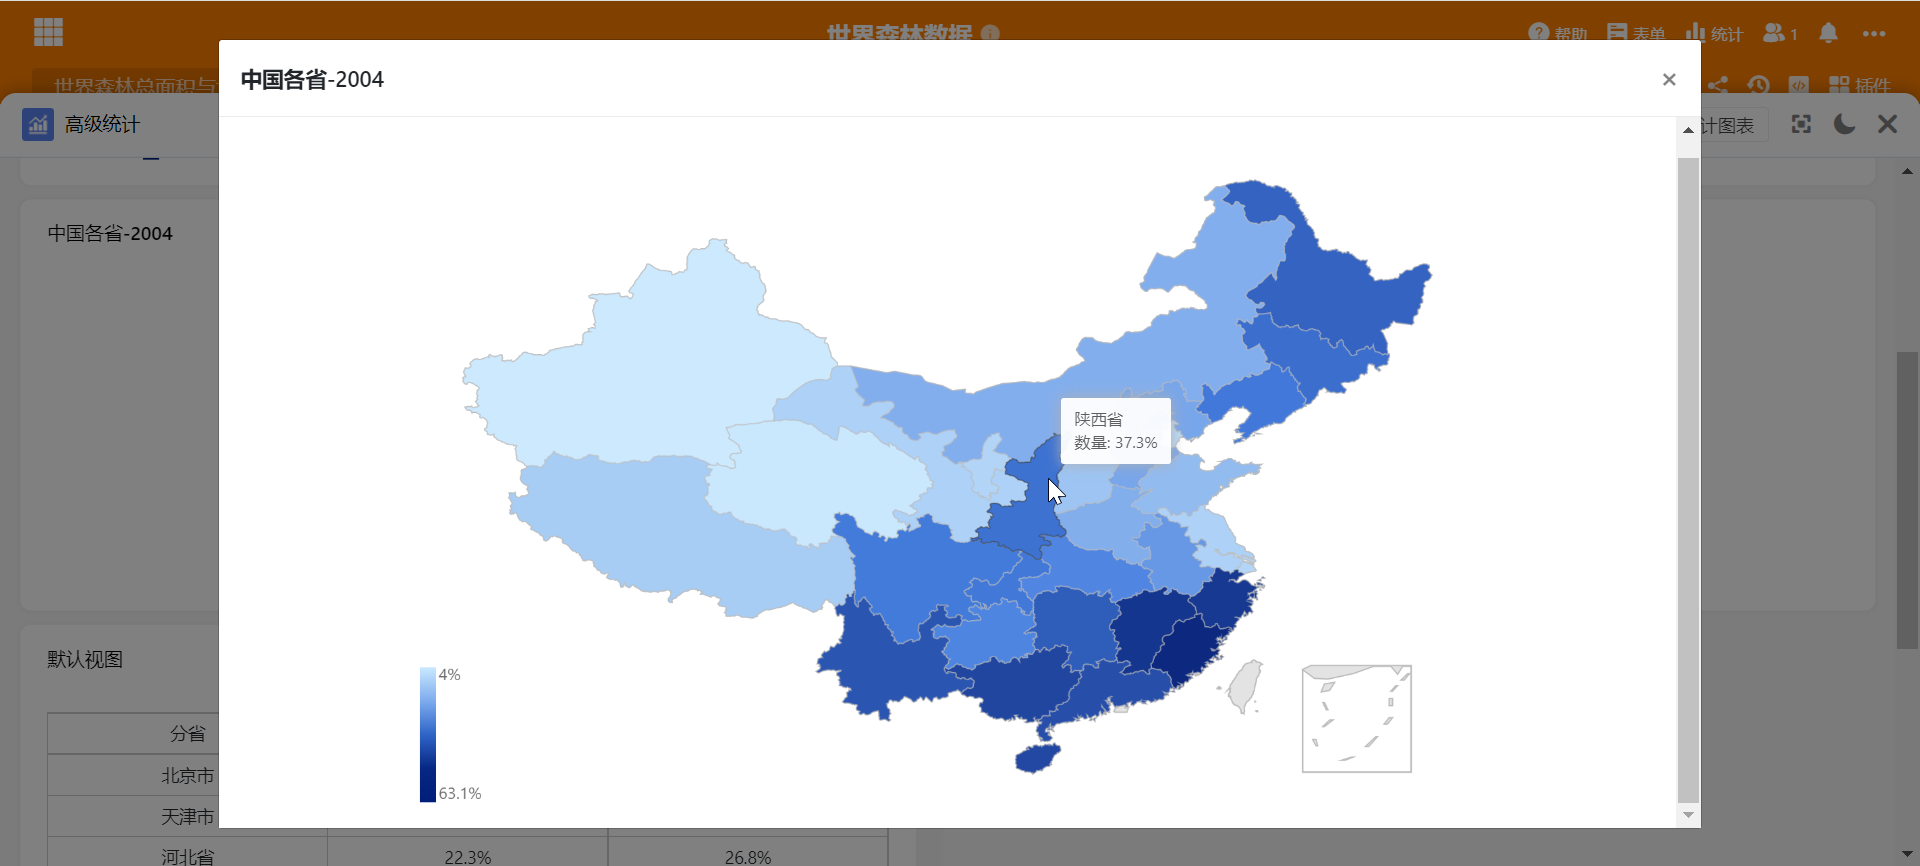 中国各省森林覆盖率对比